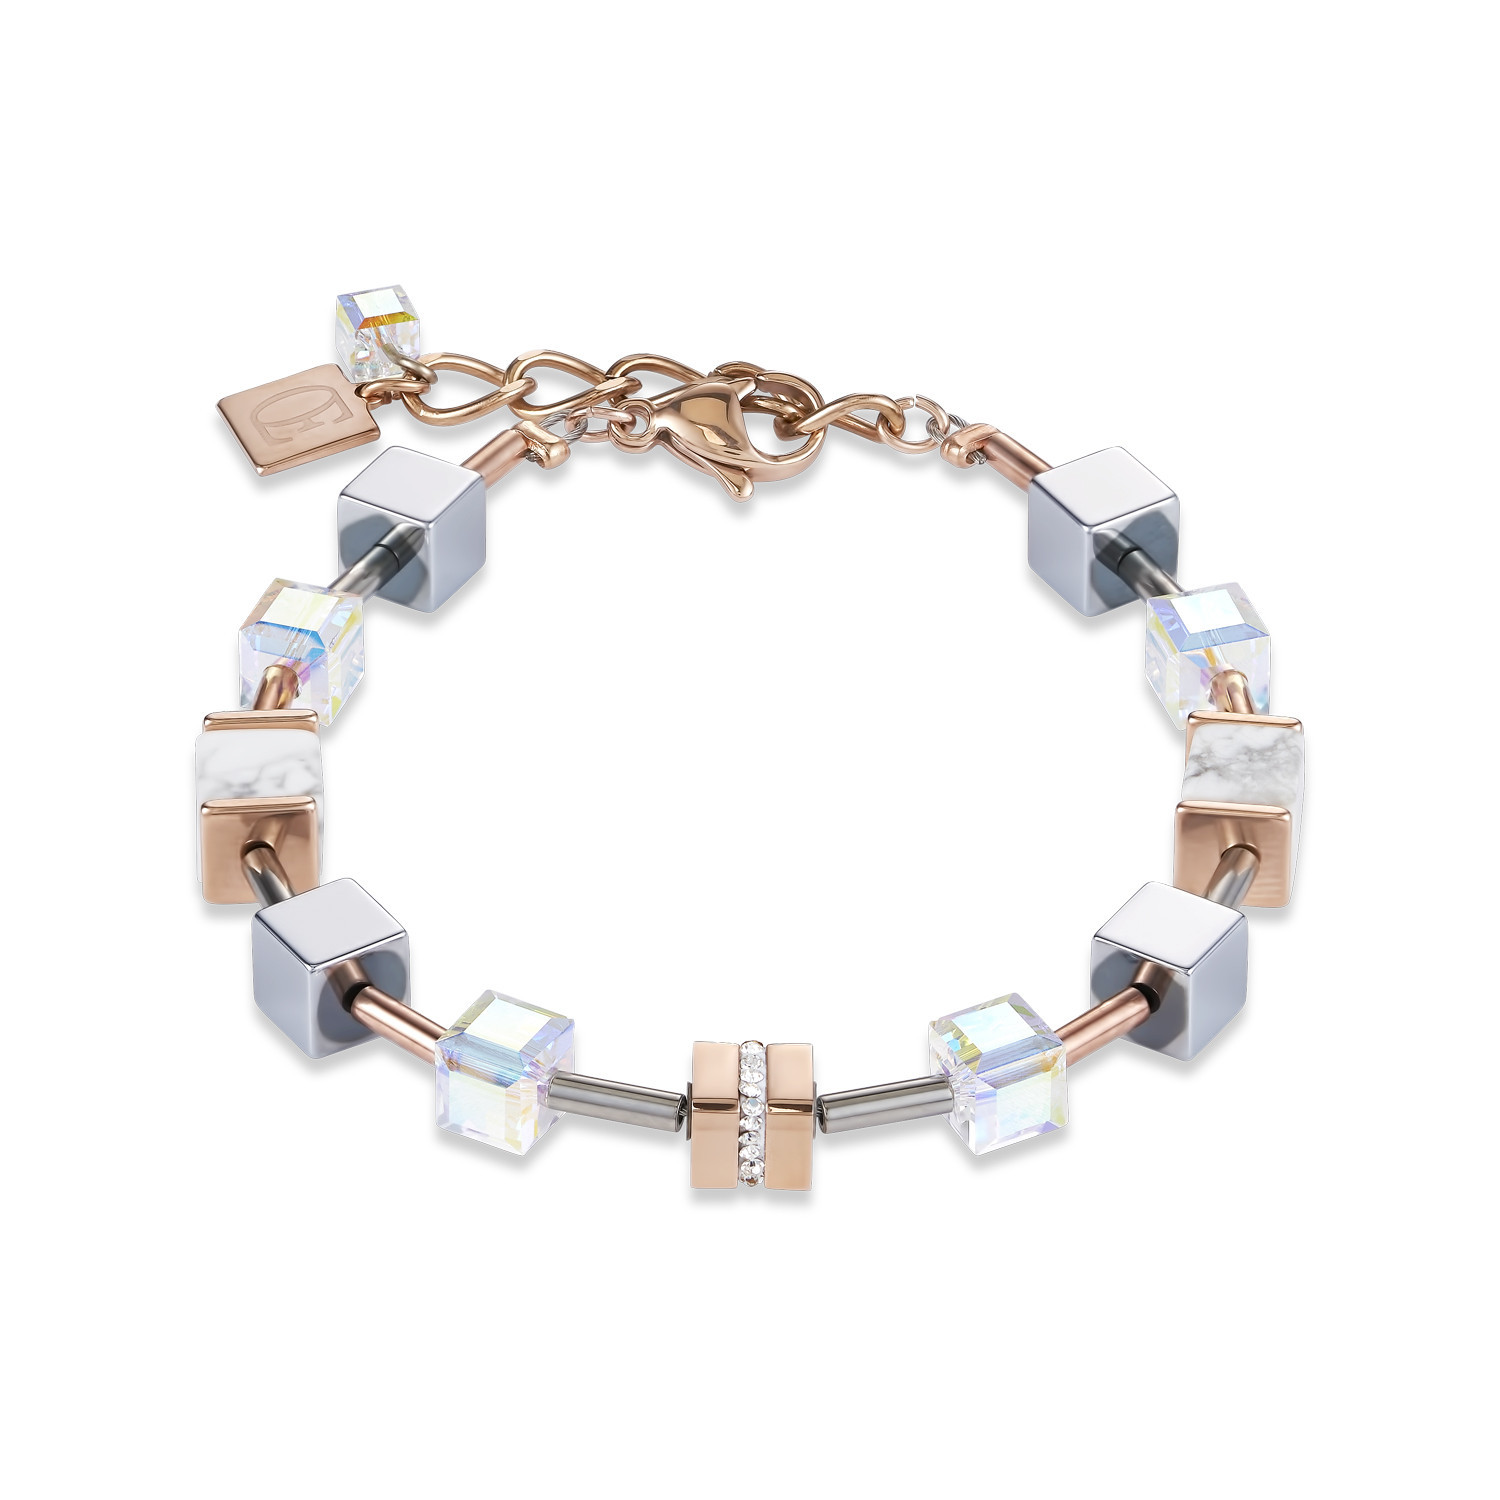 Bracelet Coeur de Lion géocube acier perles cube
tons gris, roses, blancs